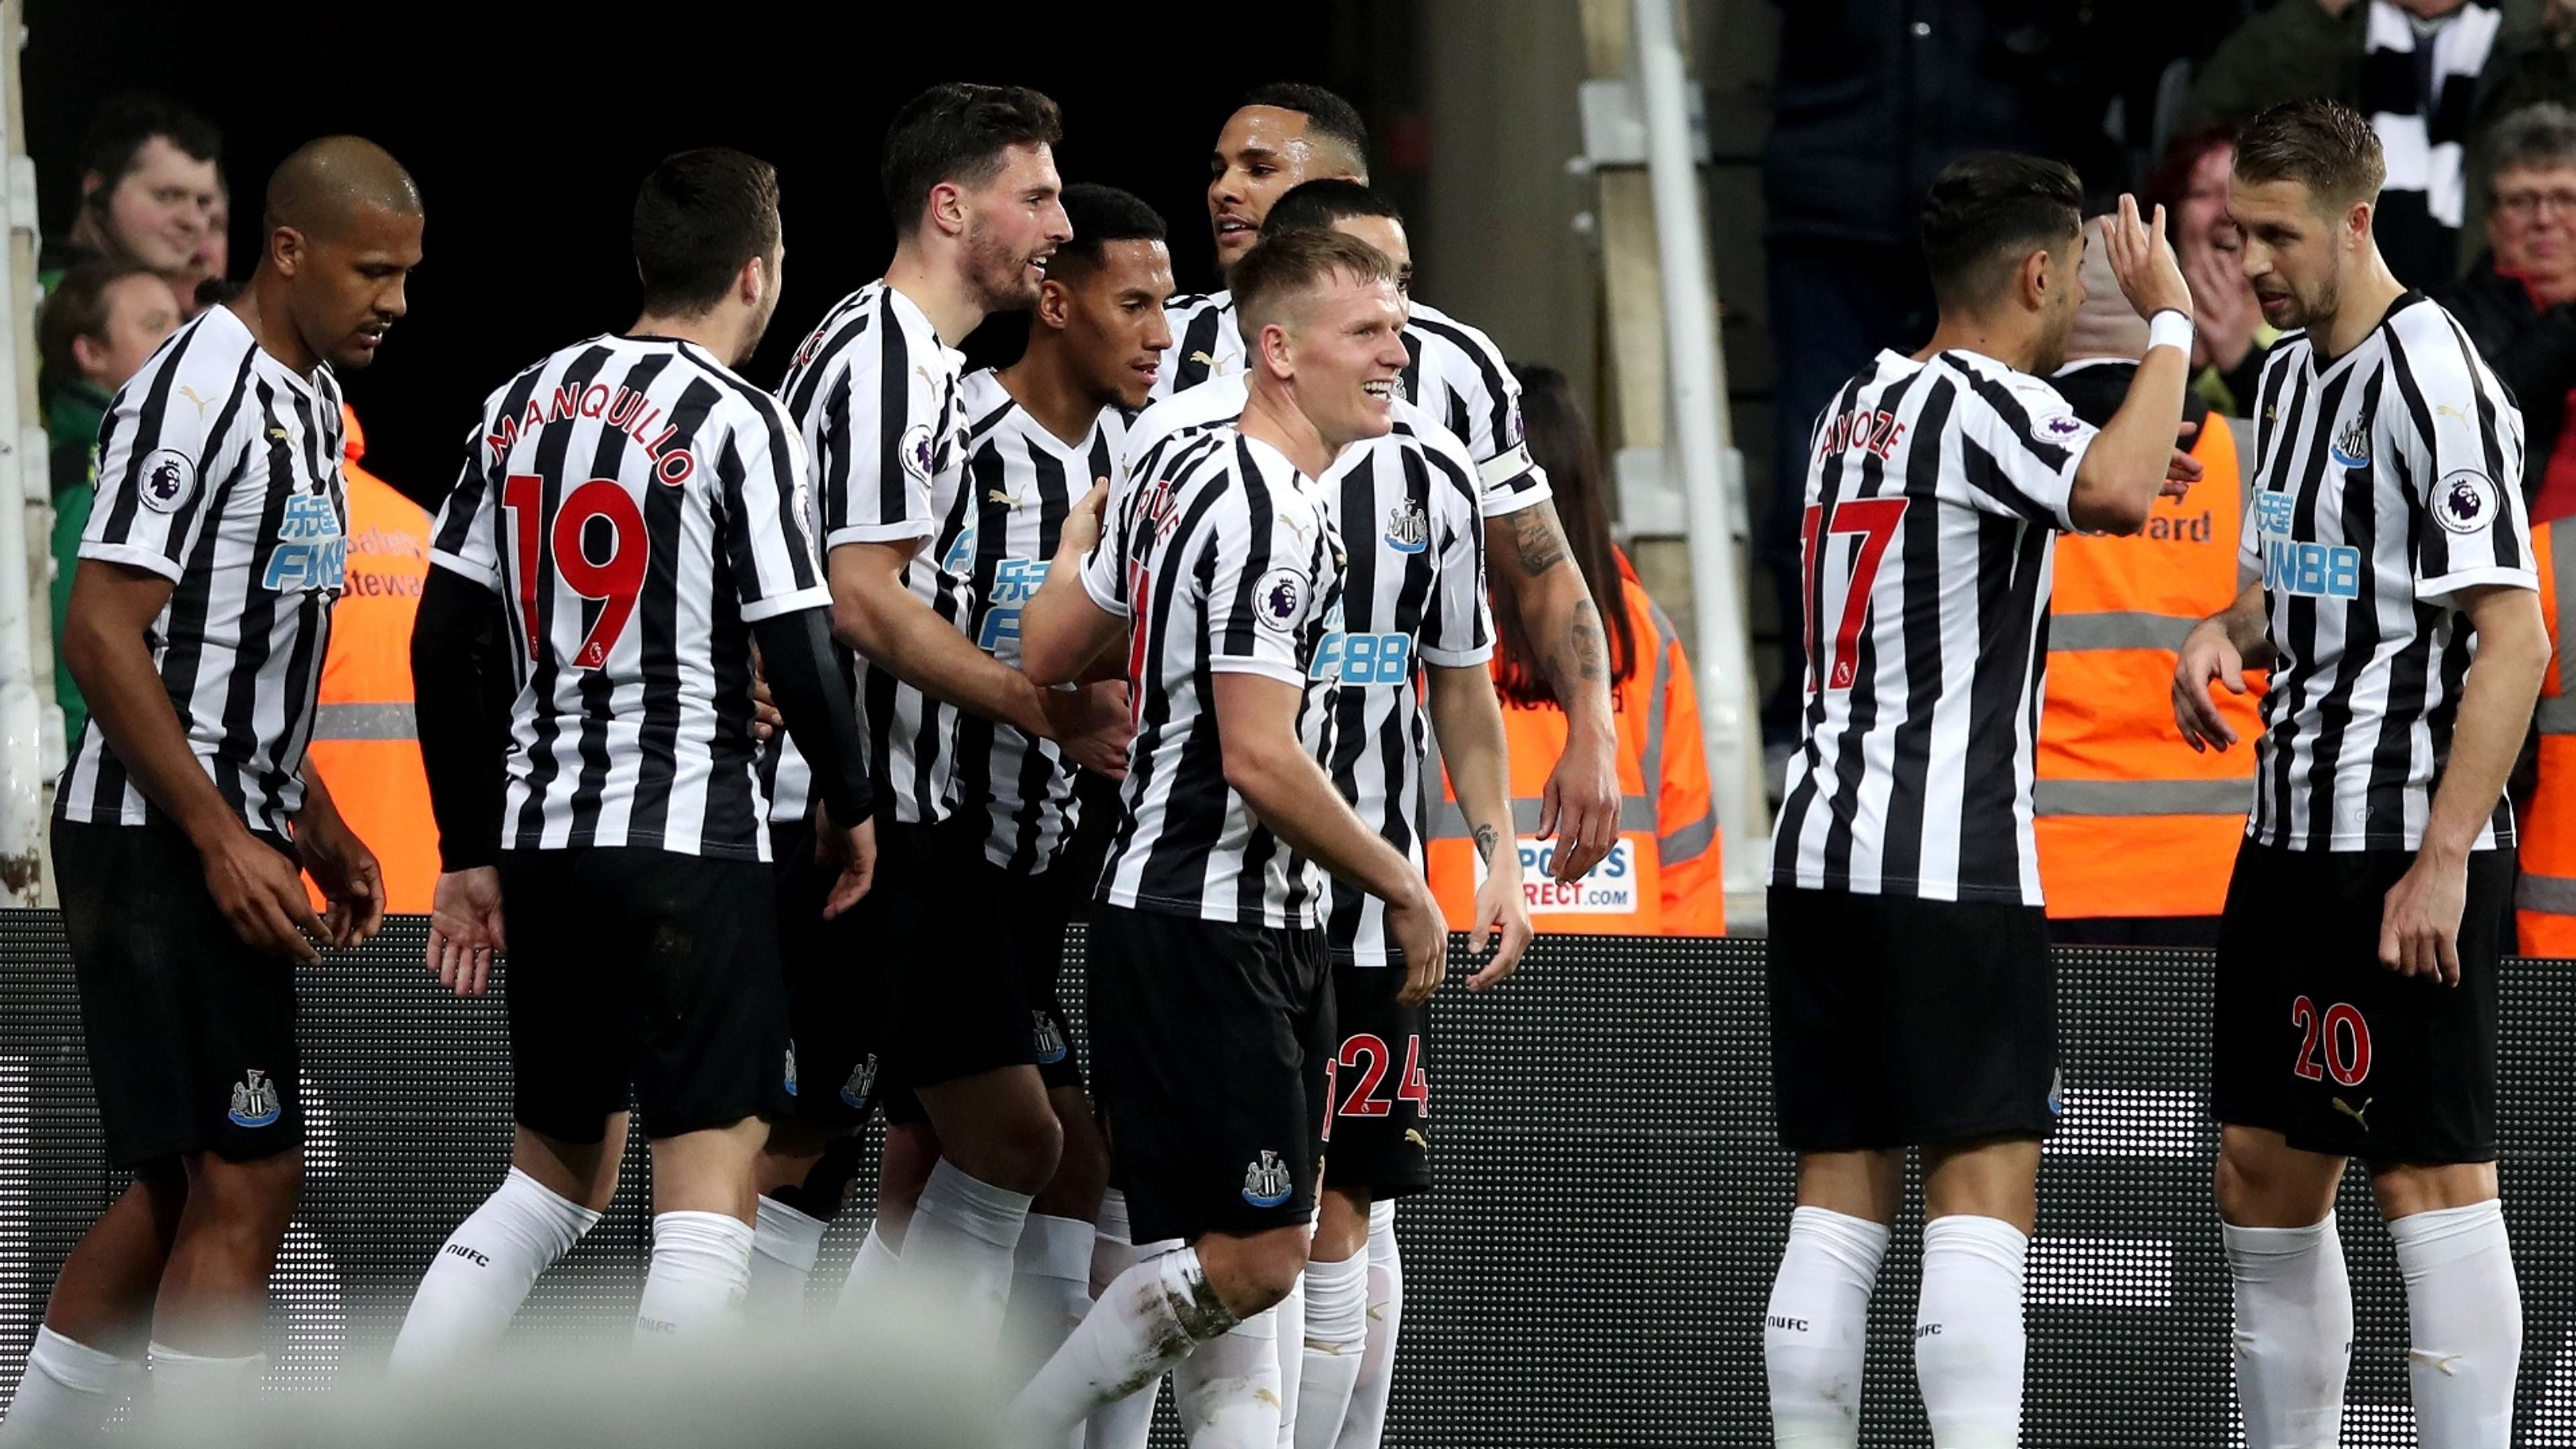 Newcastle celebrate vs Burnley